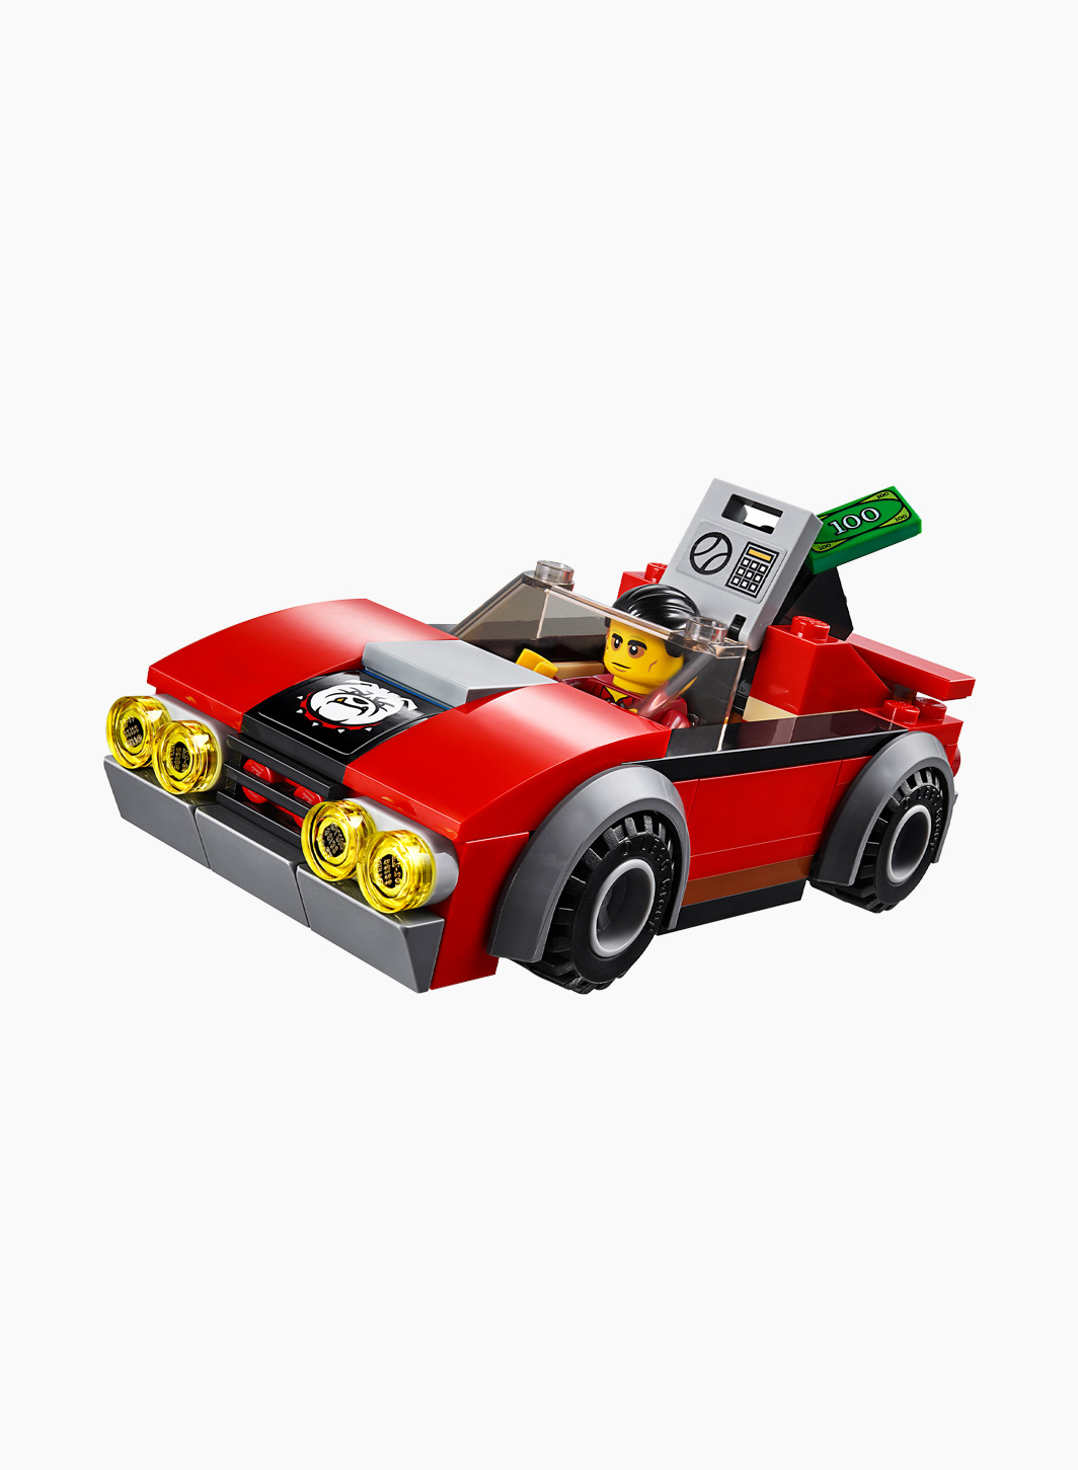 Lego City Կառուցողական Խաղ «Ձերբակալություն՝ խճուղու վրա»